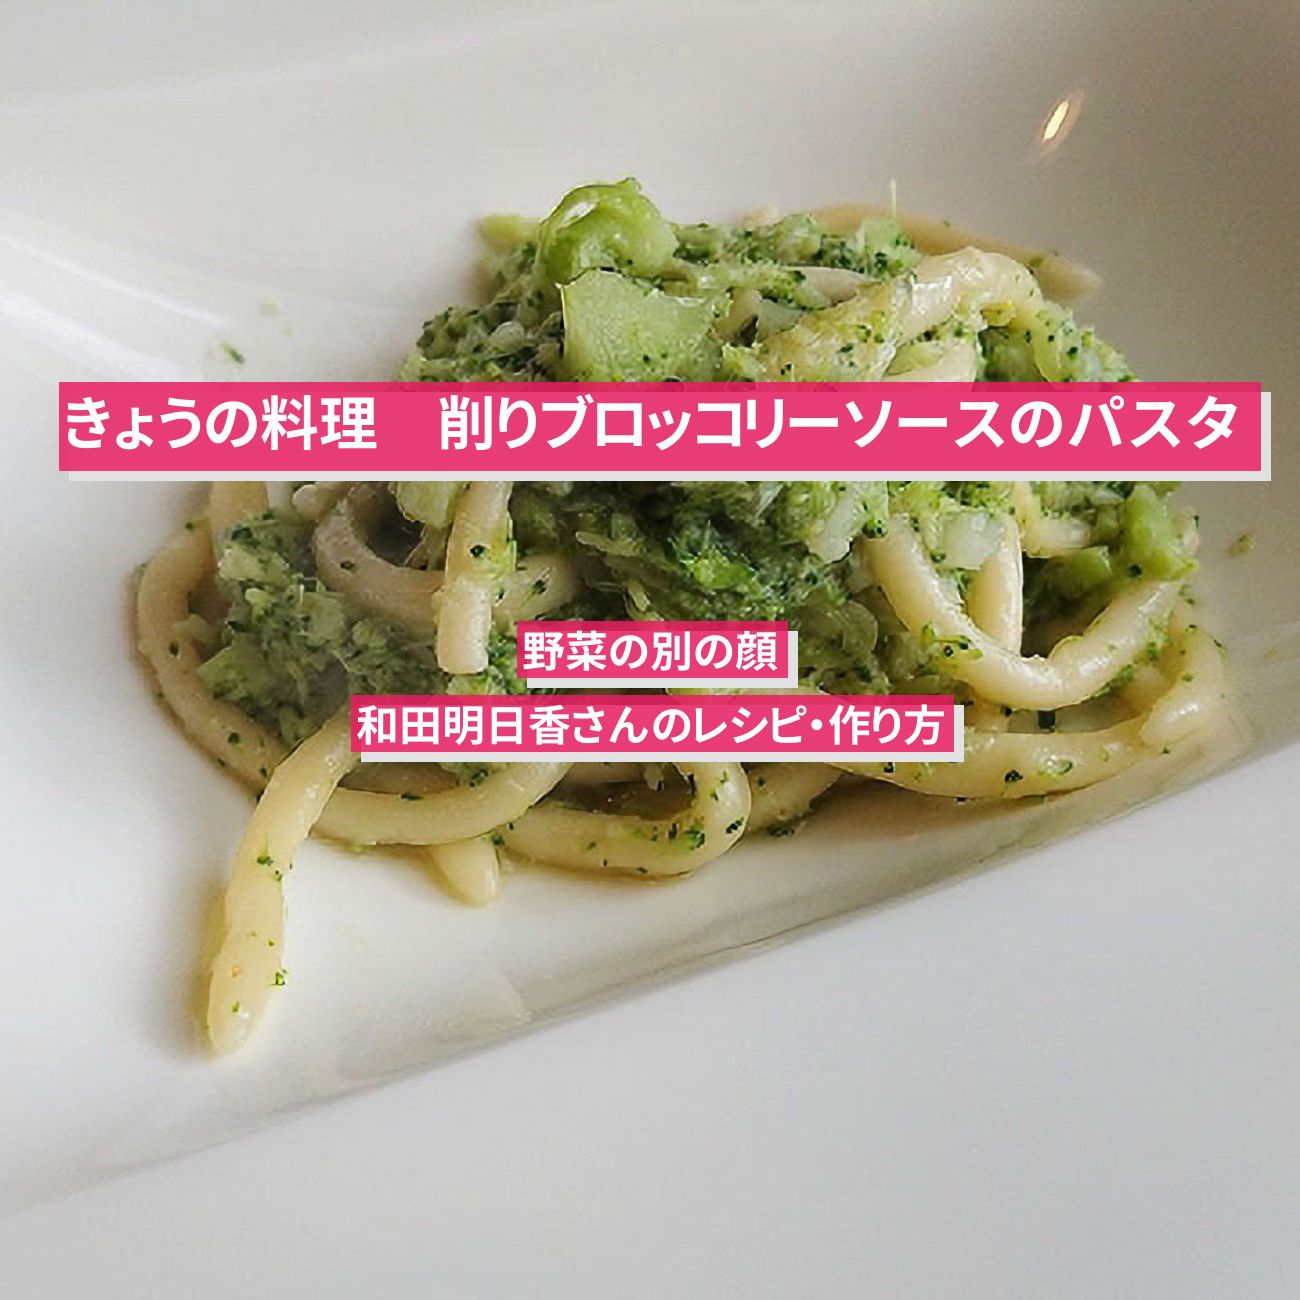 【きょうの料理】『削りブロッコリーソースのパスタ』和田明日香さんのレシピ・作り方